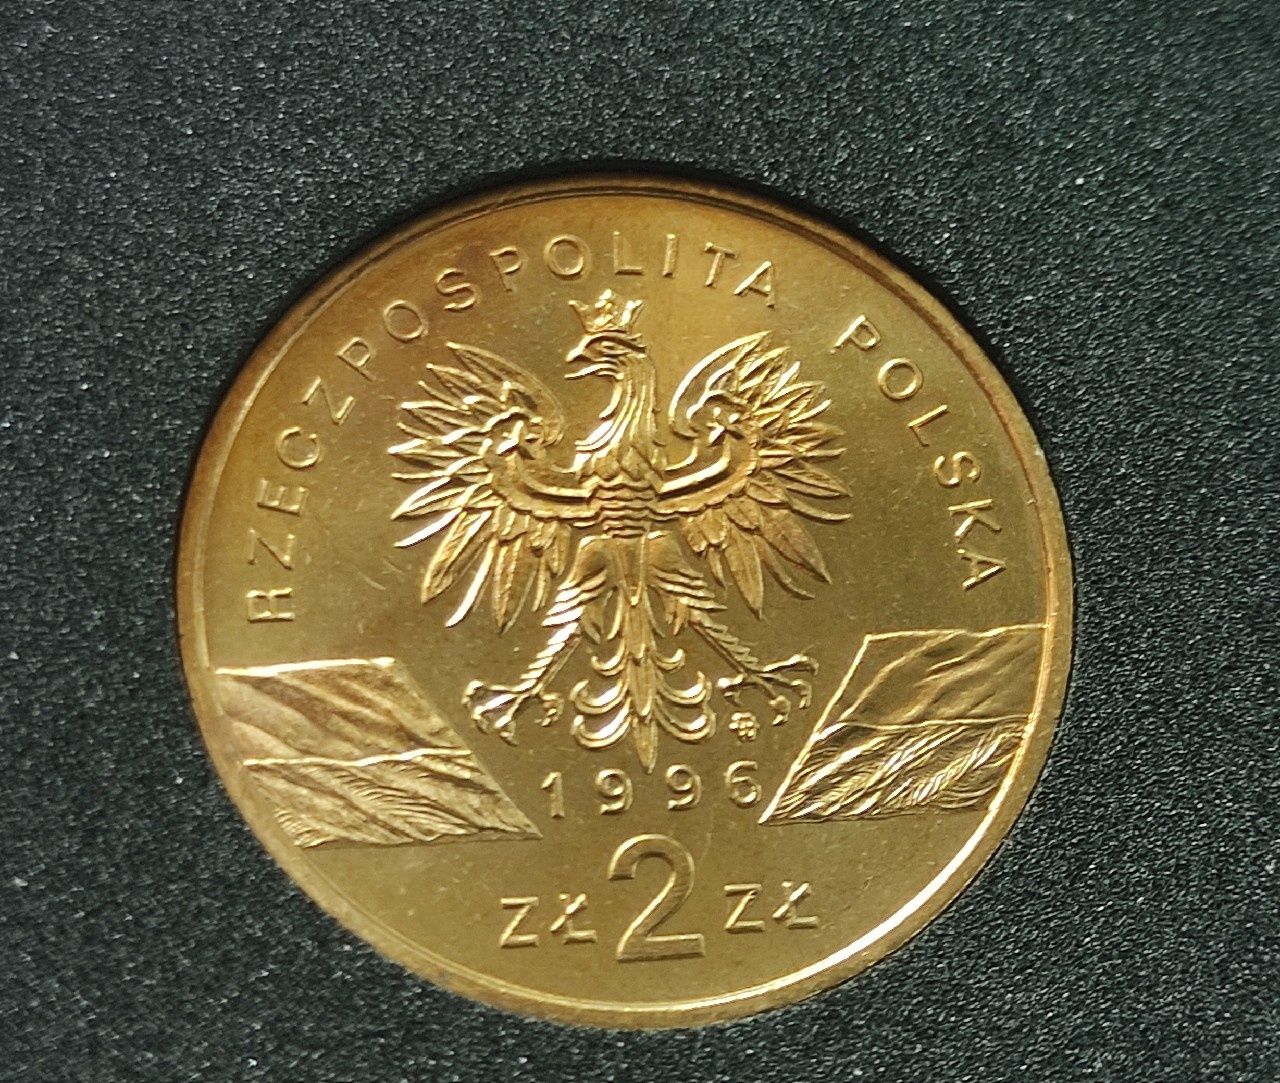 Komplet monet okoliczniściowych 2 zł 1996